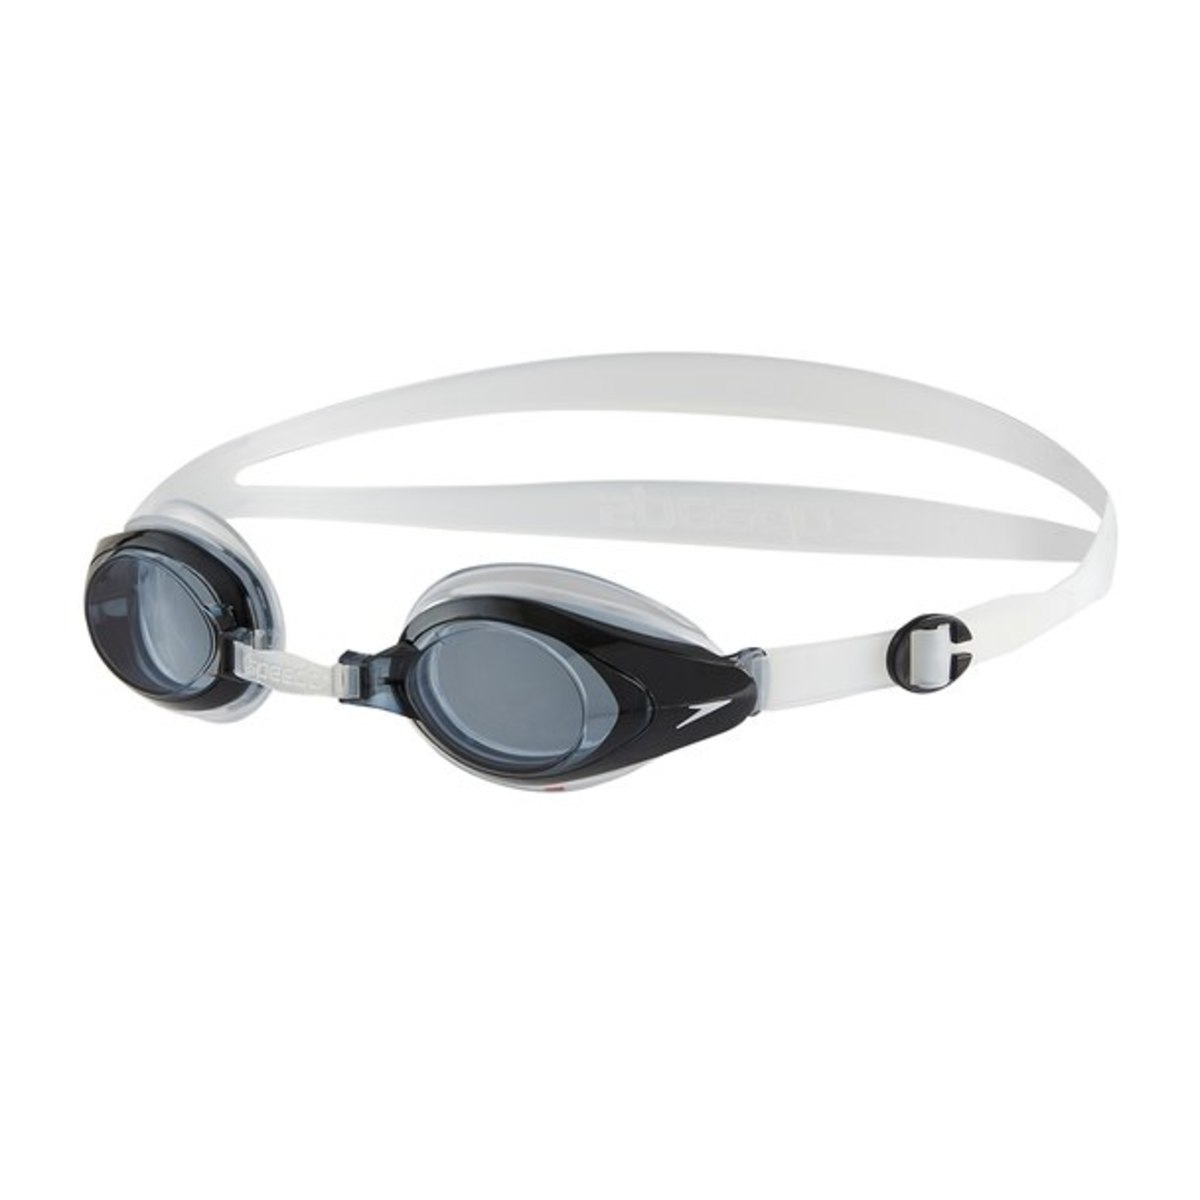 Speedo Schutzbrillen Sehstärke Modell Mariner Supreme Optical 11321 Blau 